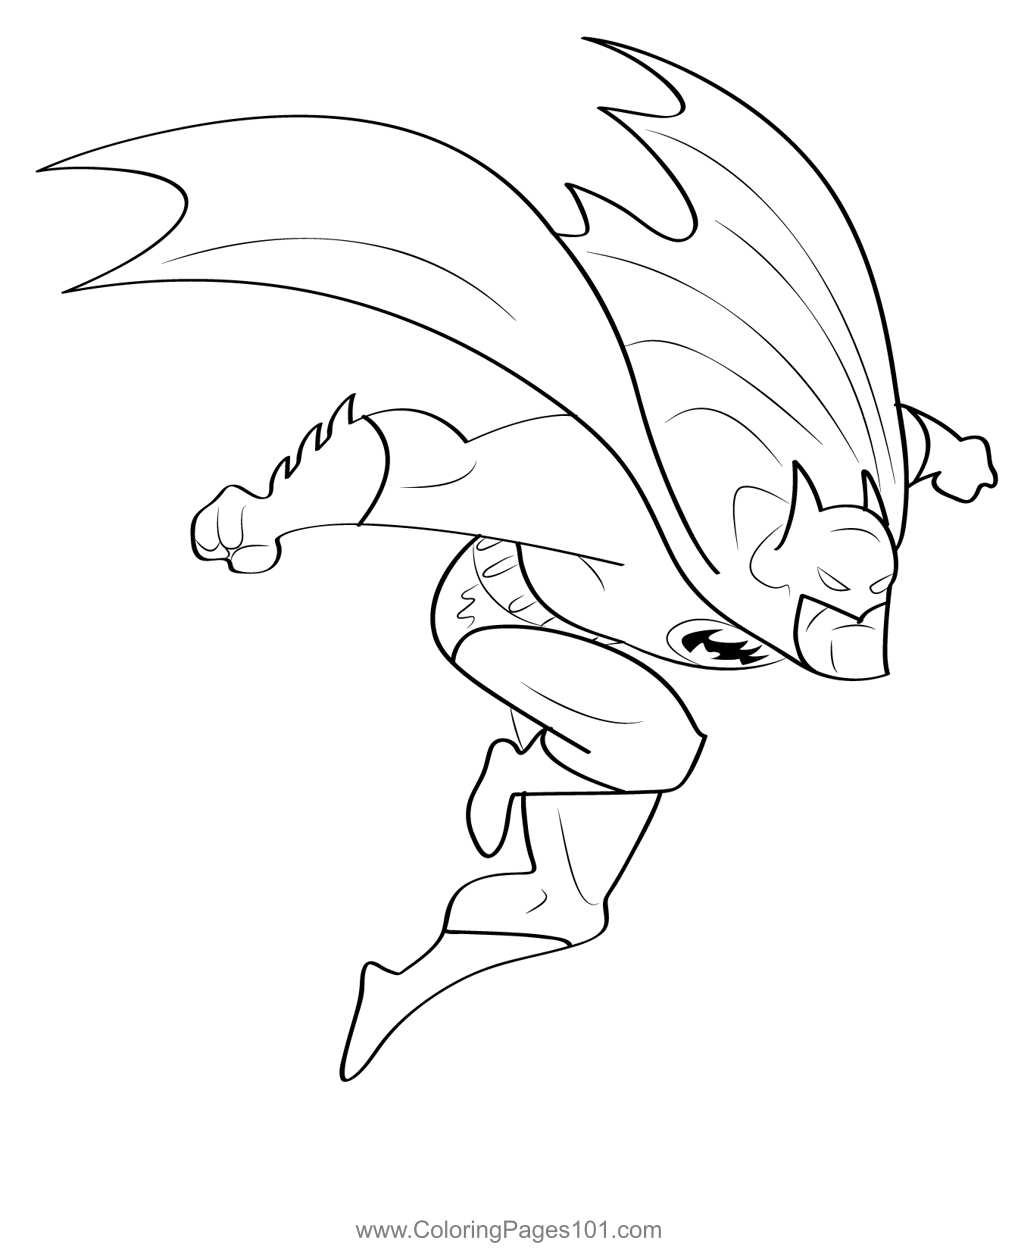 Jumping Batman